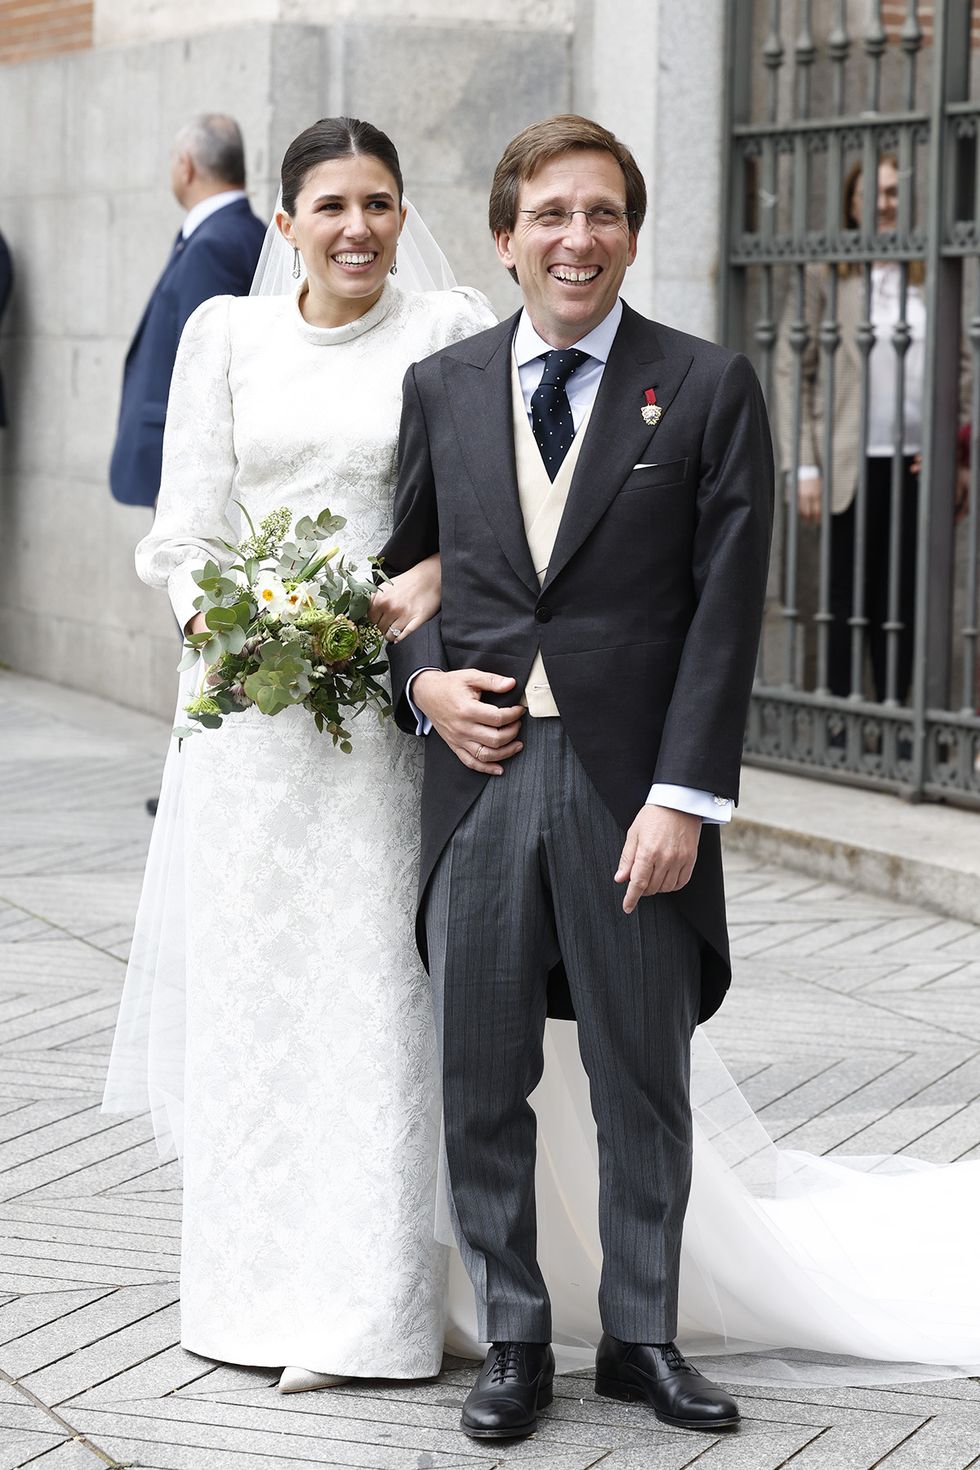 vestido de novia de teresa urquijo, en su boda con josé luis martínez almeida, alcalde de madrid